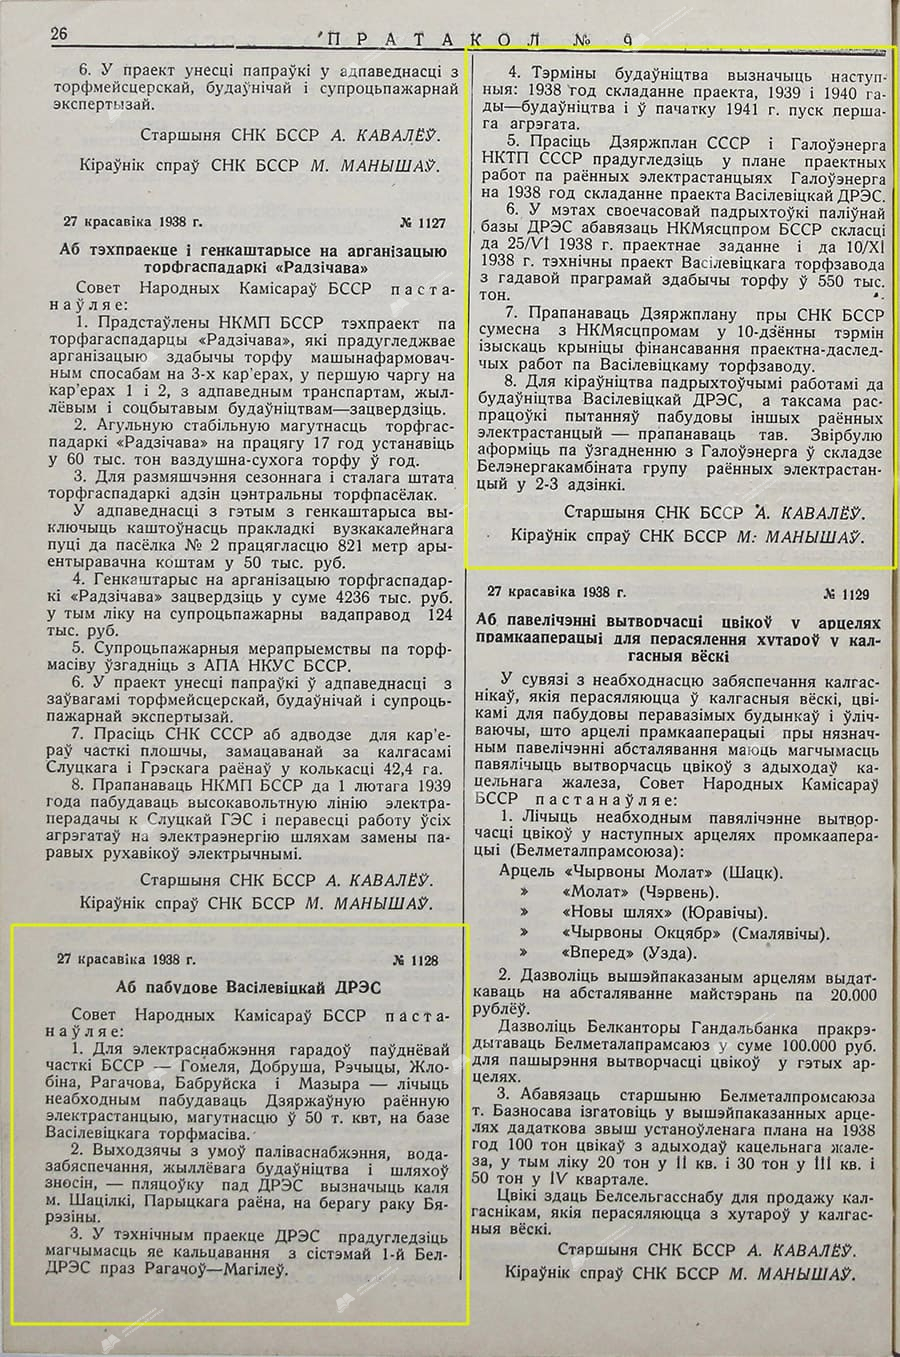 Beschluss Nr. 1128 des Rates der Volkskommissare der BSSR «Über den Bau des staatlichen Regionalkraftwerks Wassiljewitschski»-с. 0